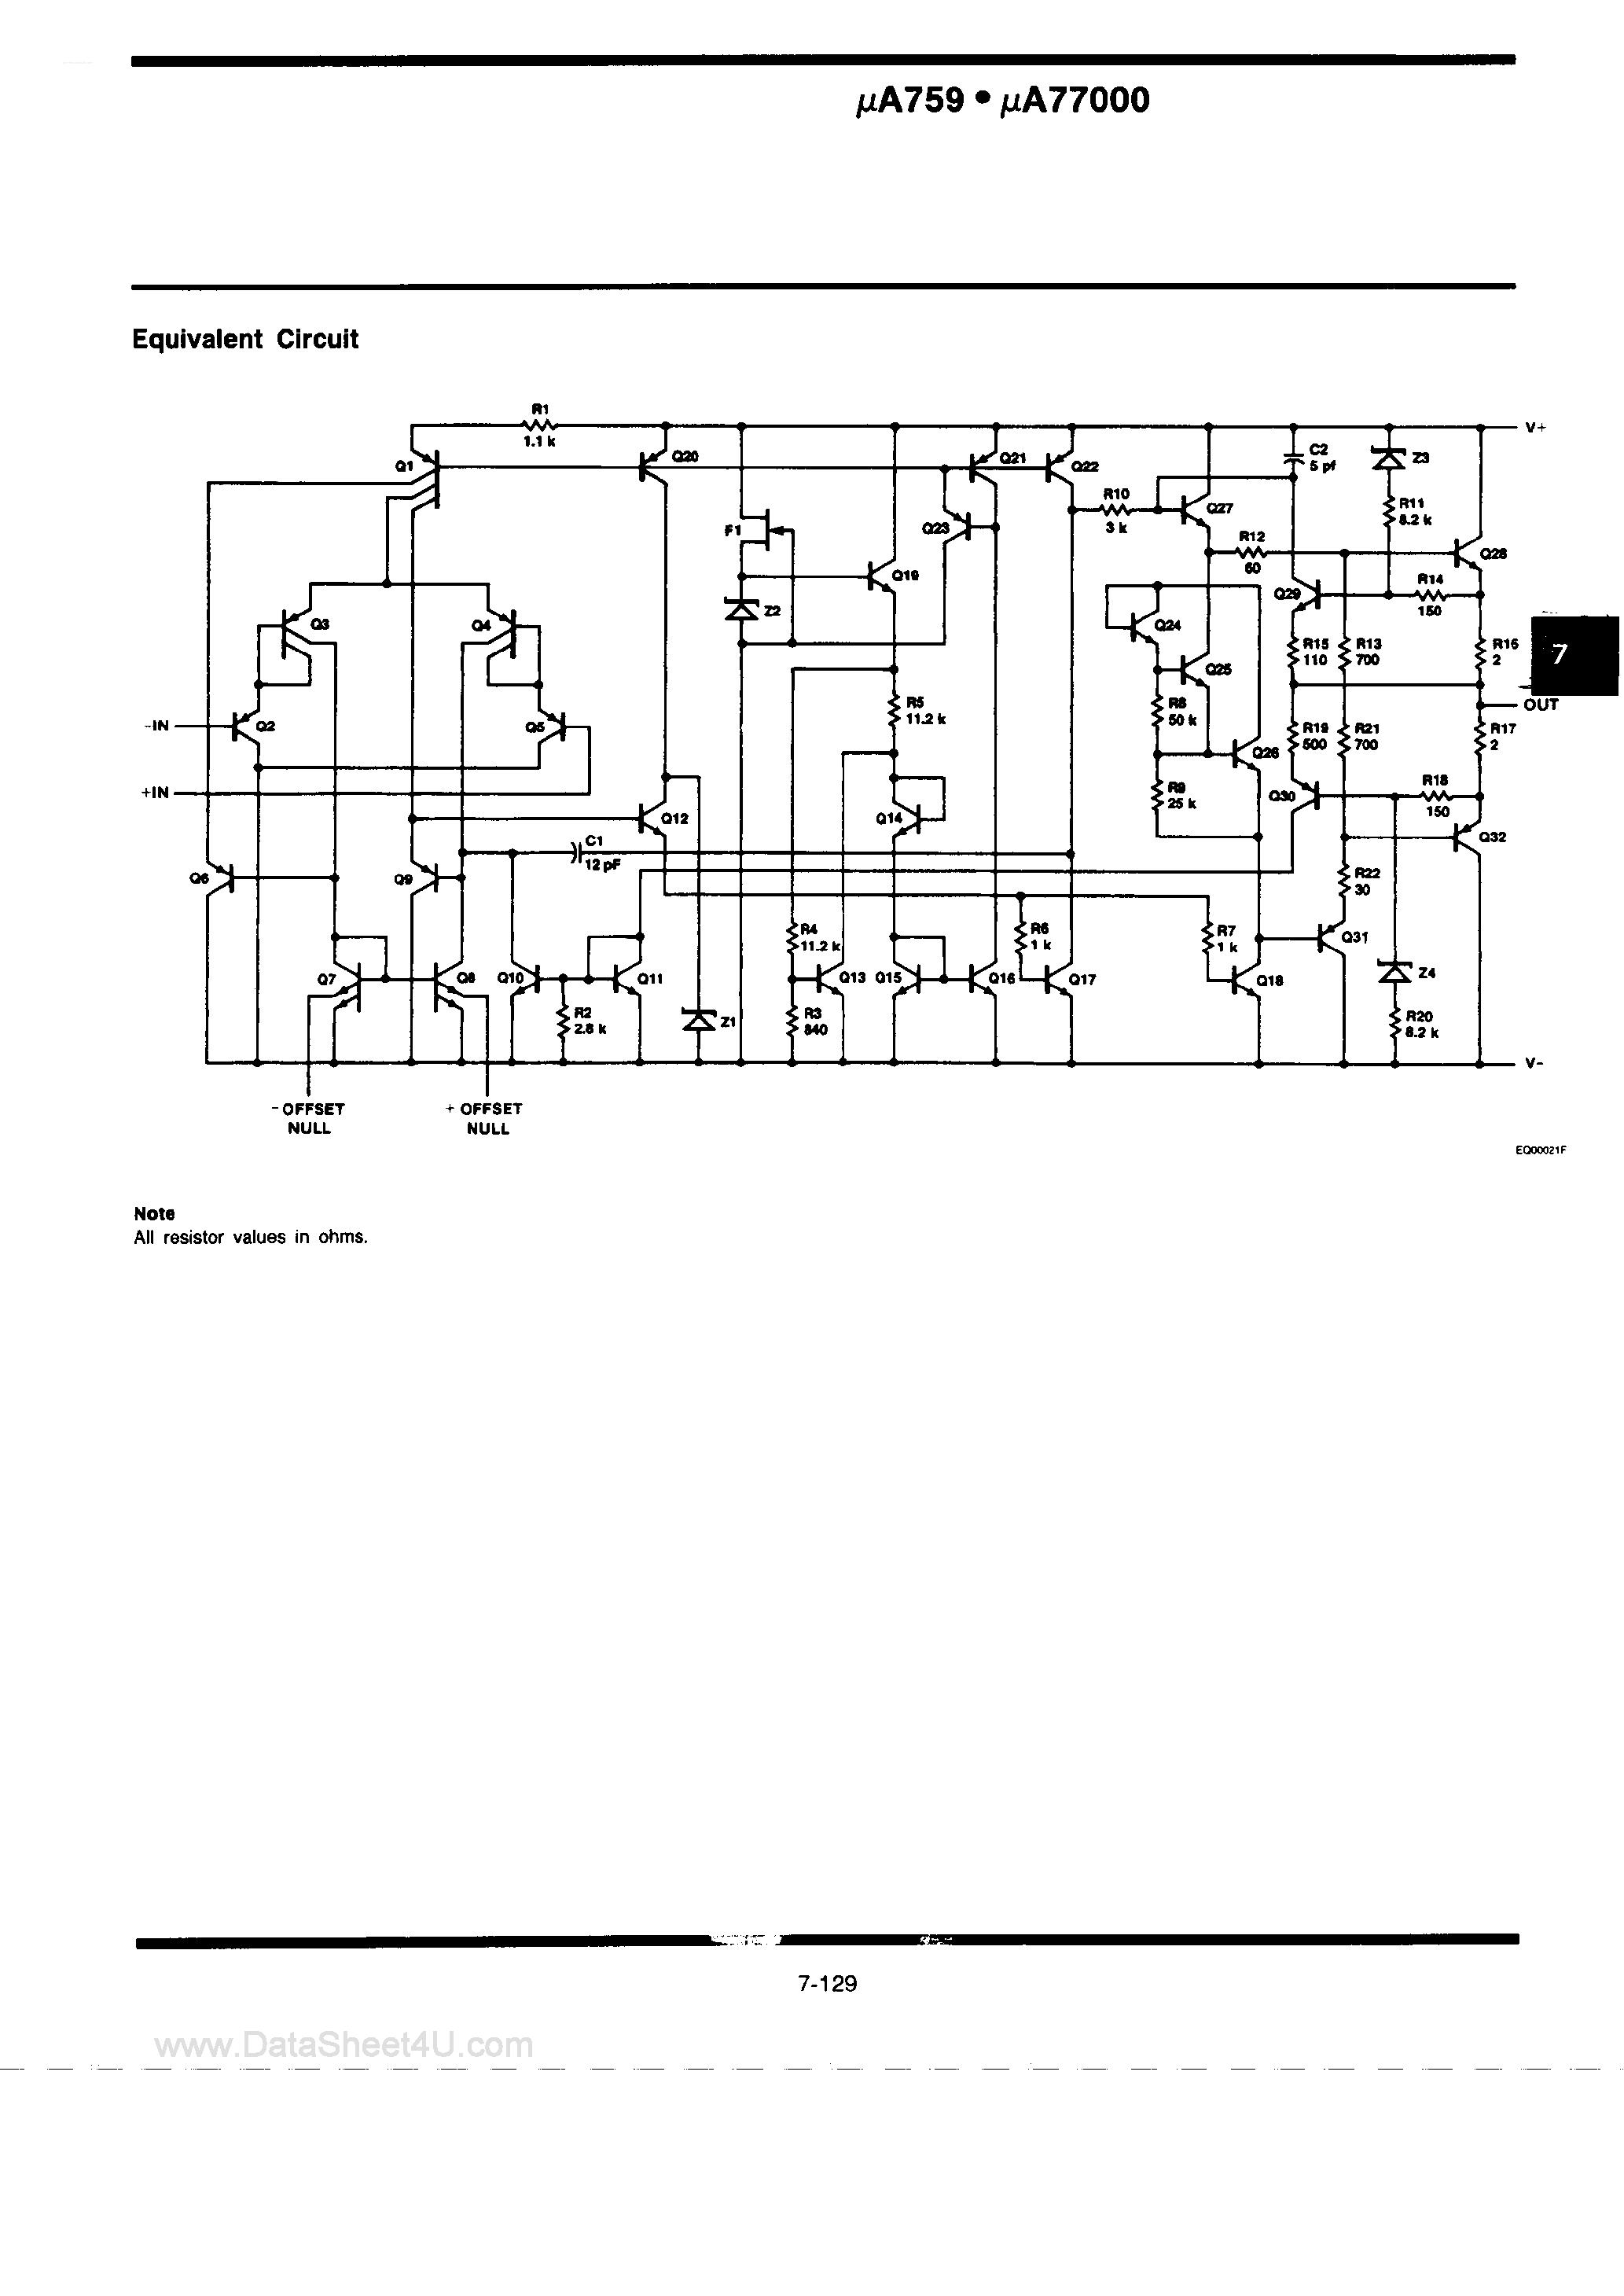 Datasheet UA759 - (UA759 / UA77000) POWER OPERATIONAL AMPLIFIERS page 2